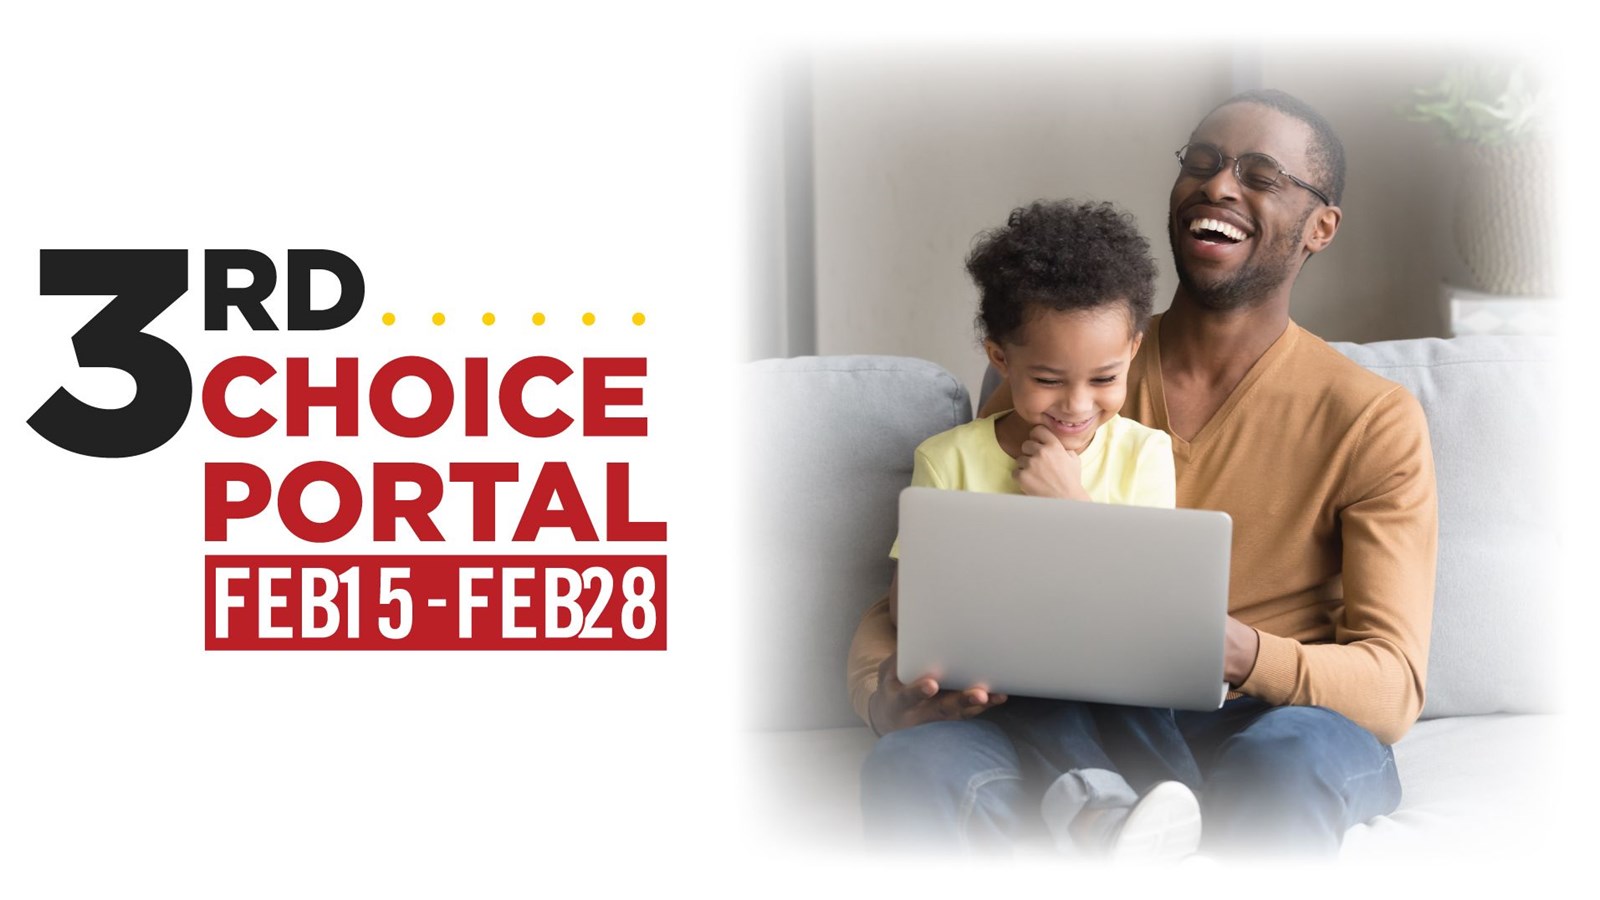 Third Choice Portal Opens Feb 15